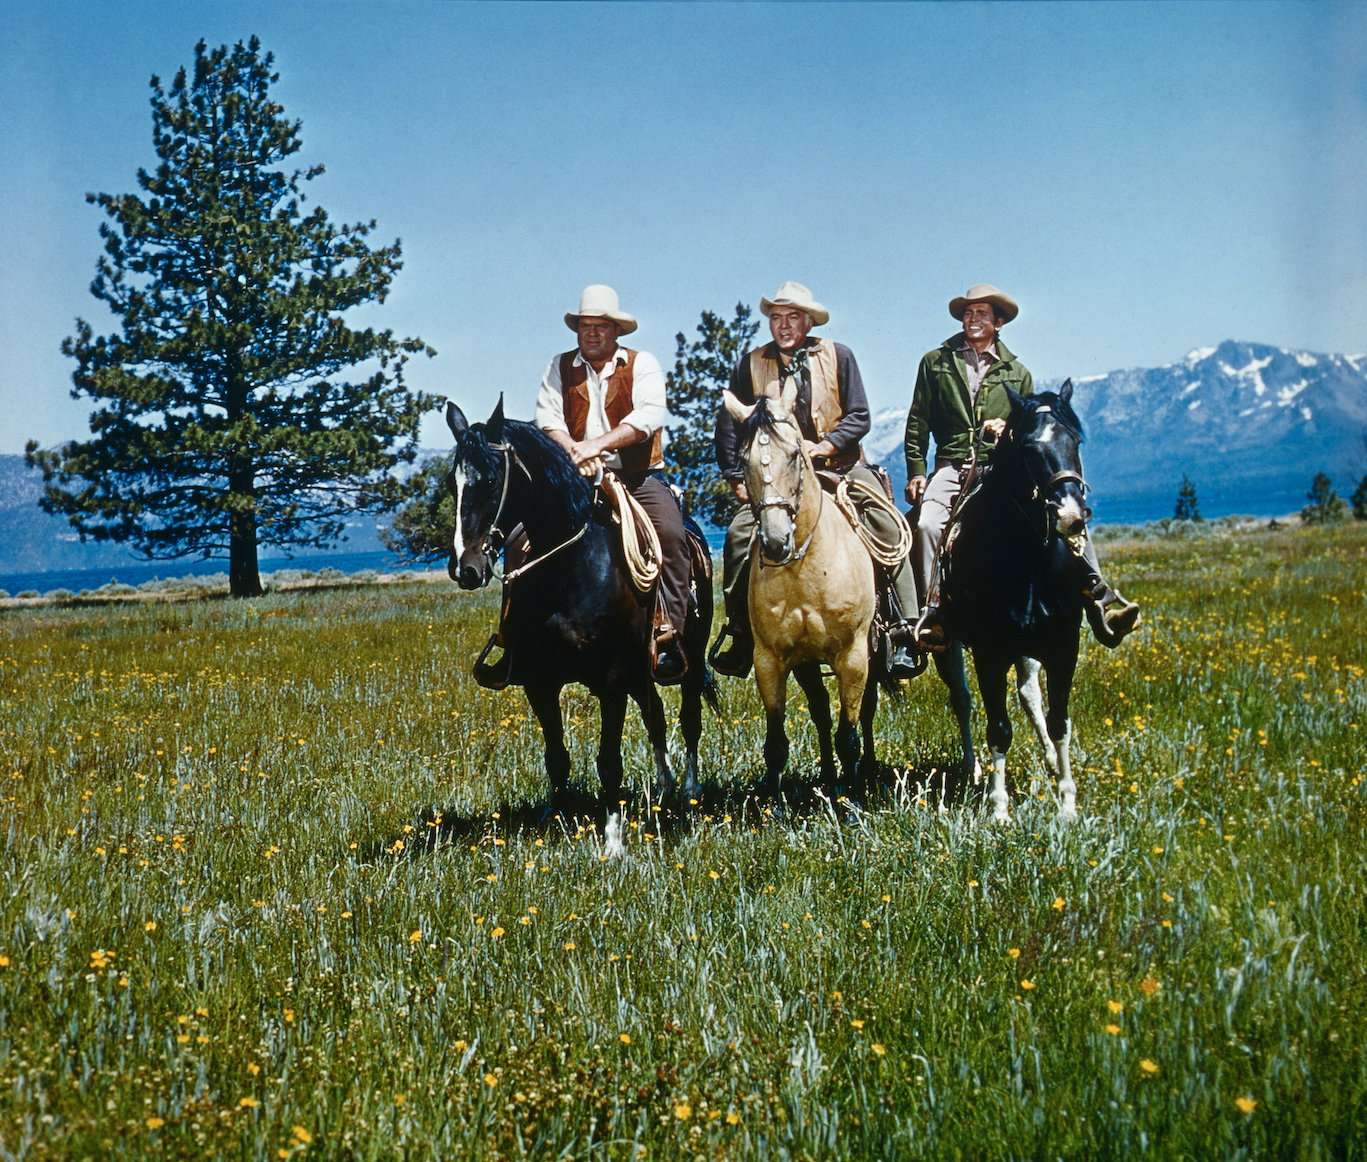 Michael Landon, Lorne Greene, and Dan Blocker on horseback in a field in 'Bonanza'